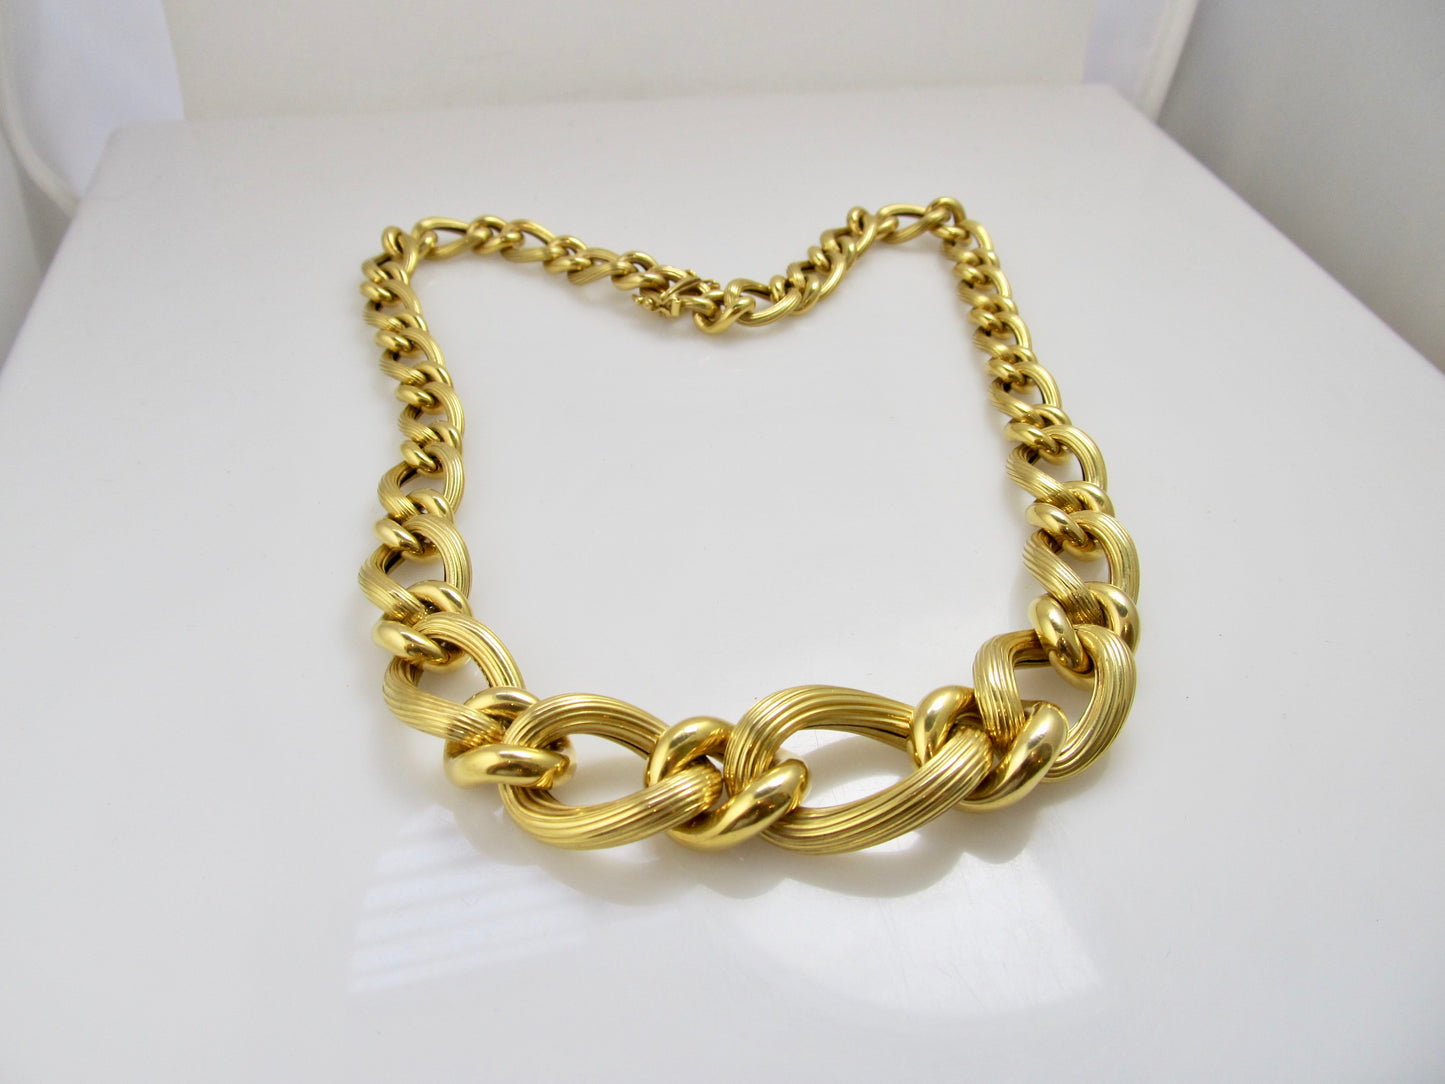 Modern 14k textured chain necklace